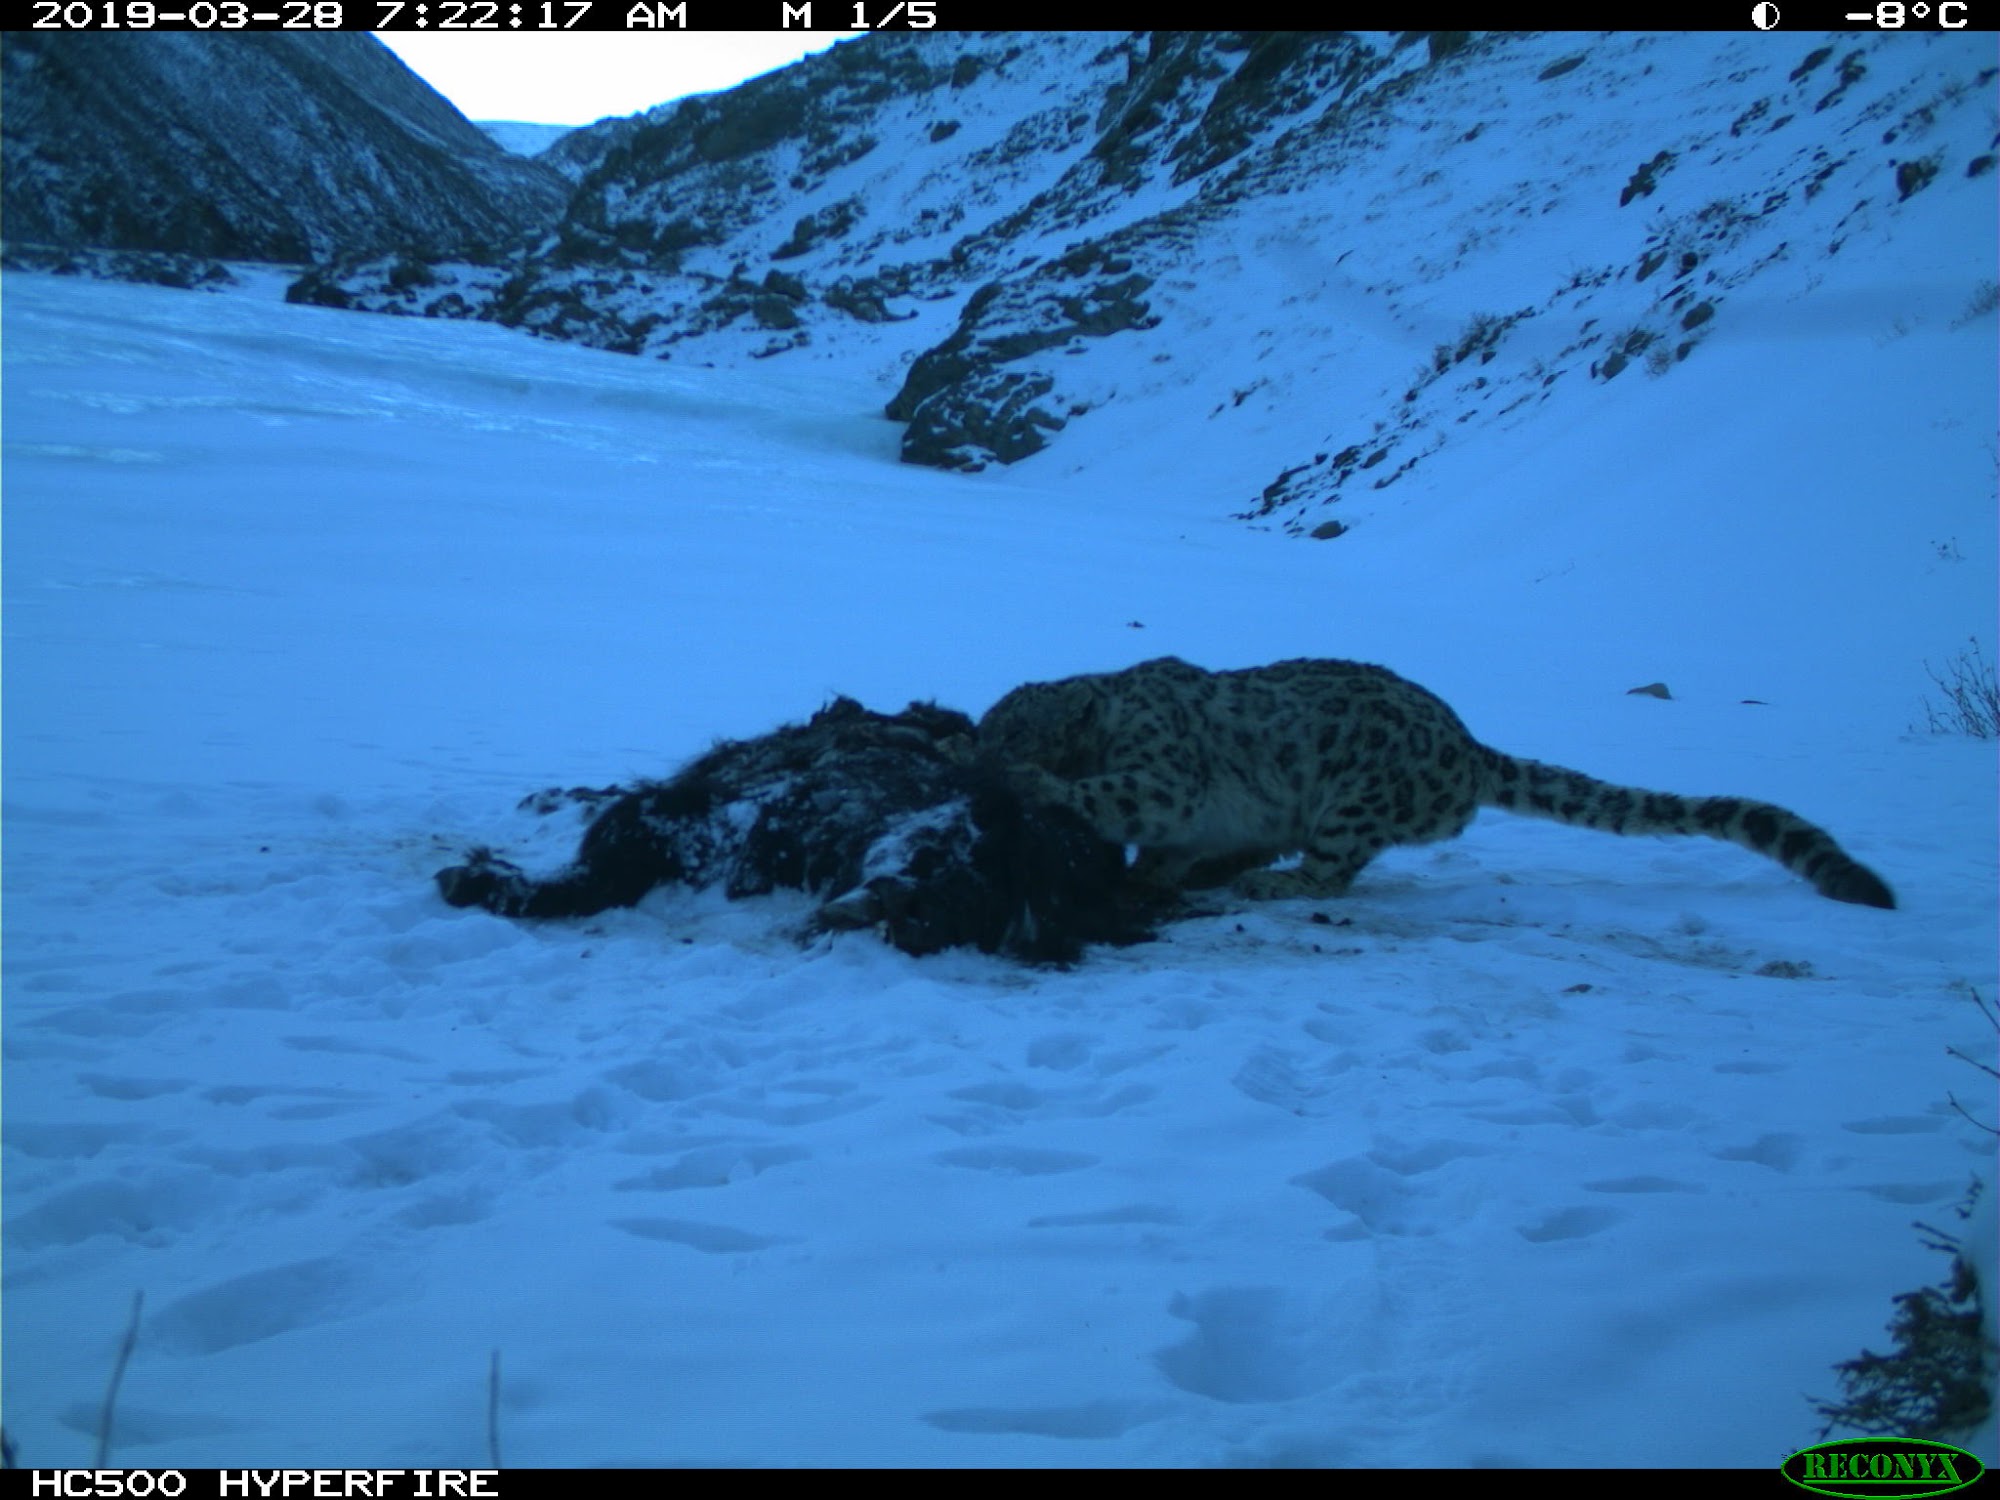 immagine-del-leopardo-delle-nevi-scattata-dalla-fototrappola-francesco-rovero-1.jpg